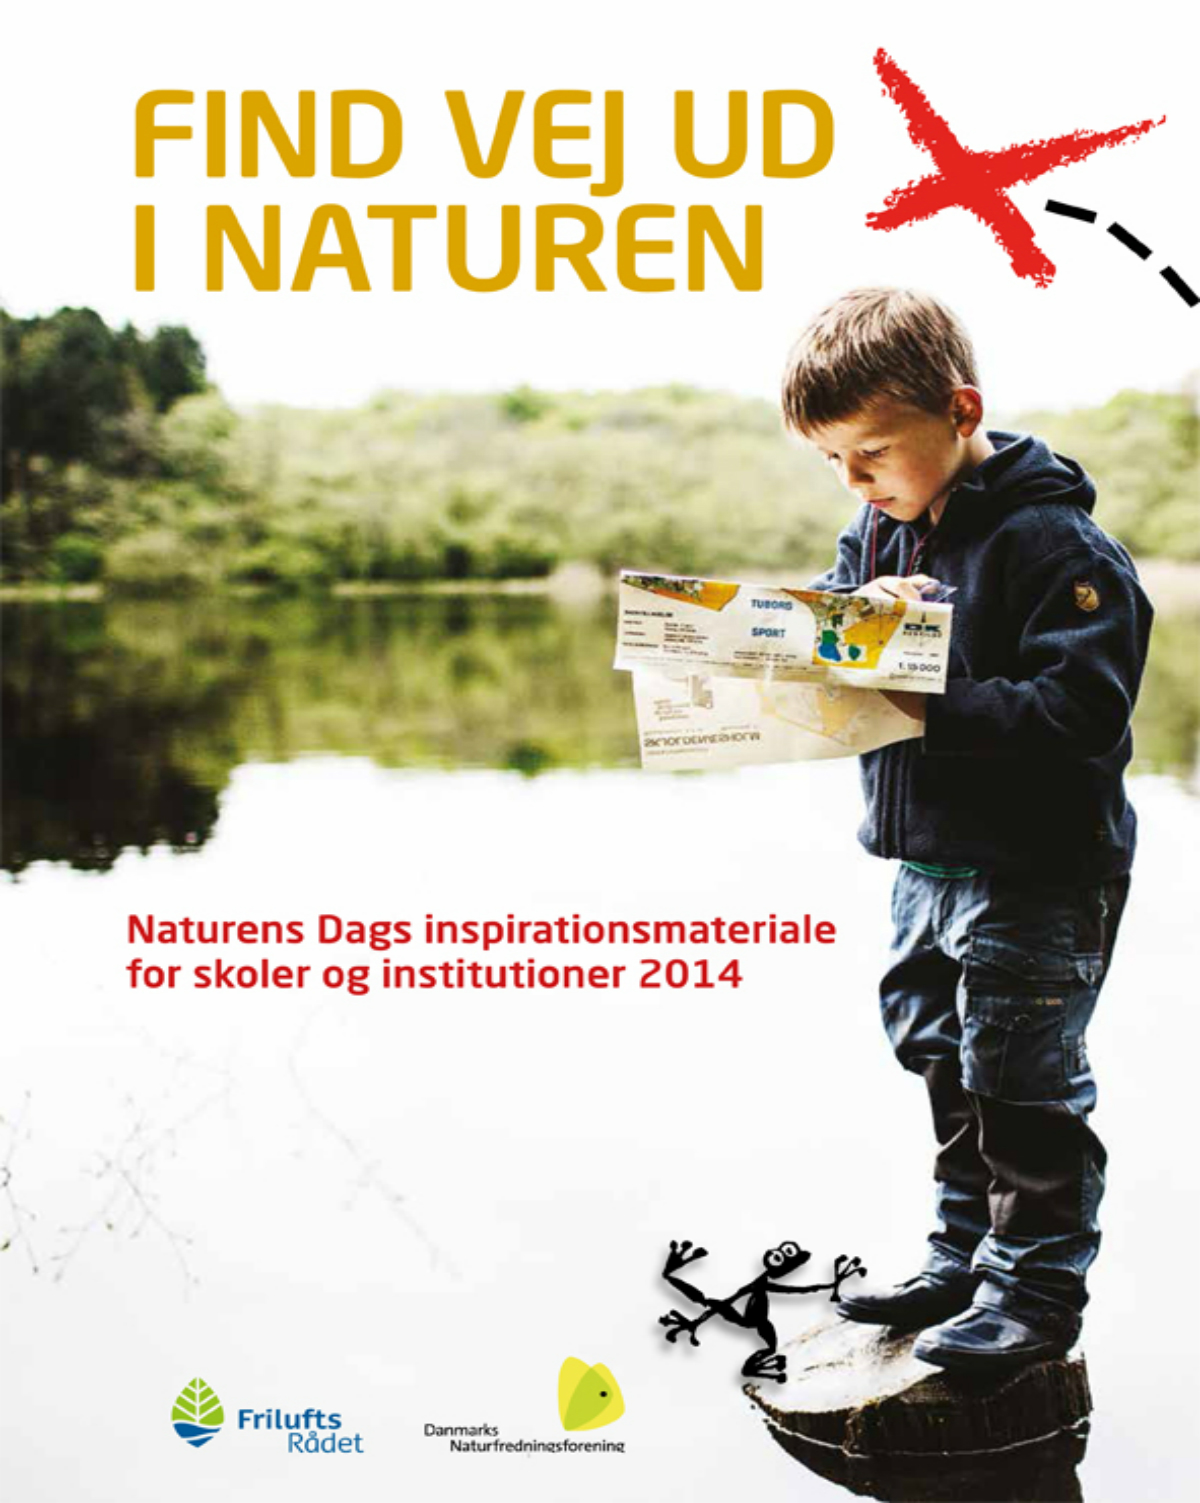 Undervisningsmateriale for skoler til Naturens dag 2014 om Find vej ud i naturen